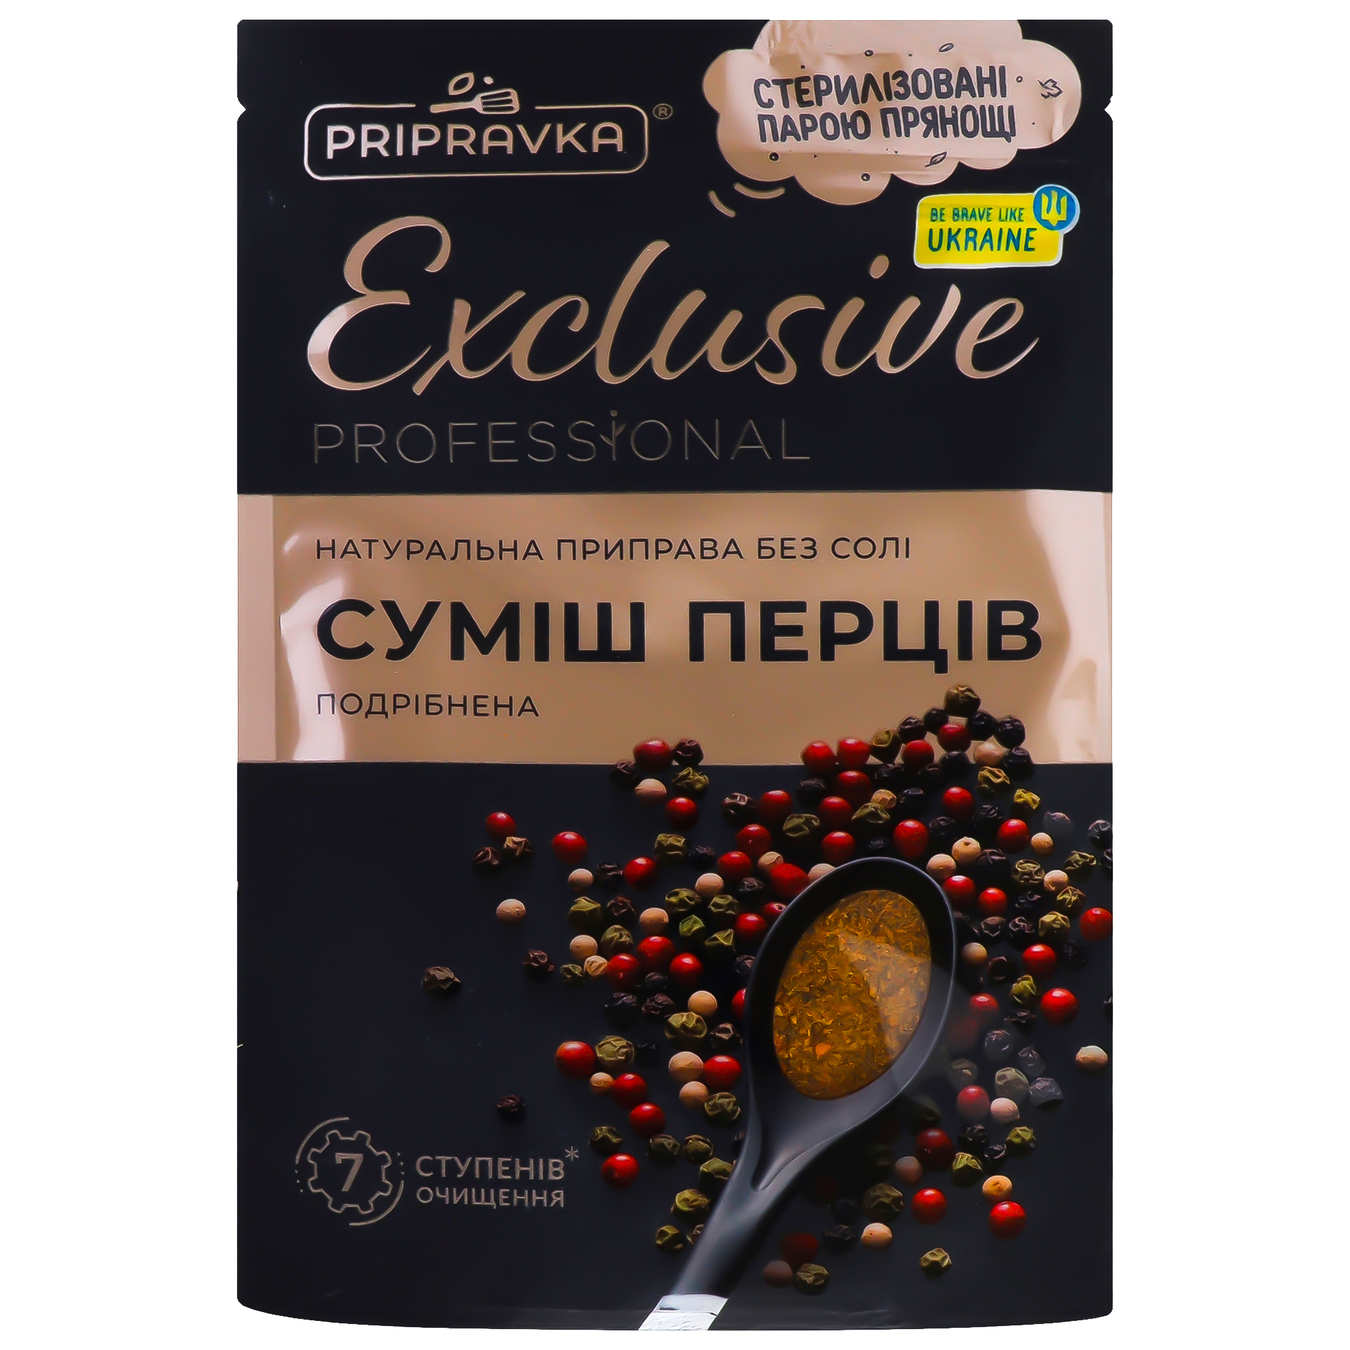 Приправа Pripravka Exclusive Professional Суміш перців без солі натуральна 35г